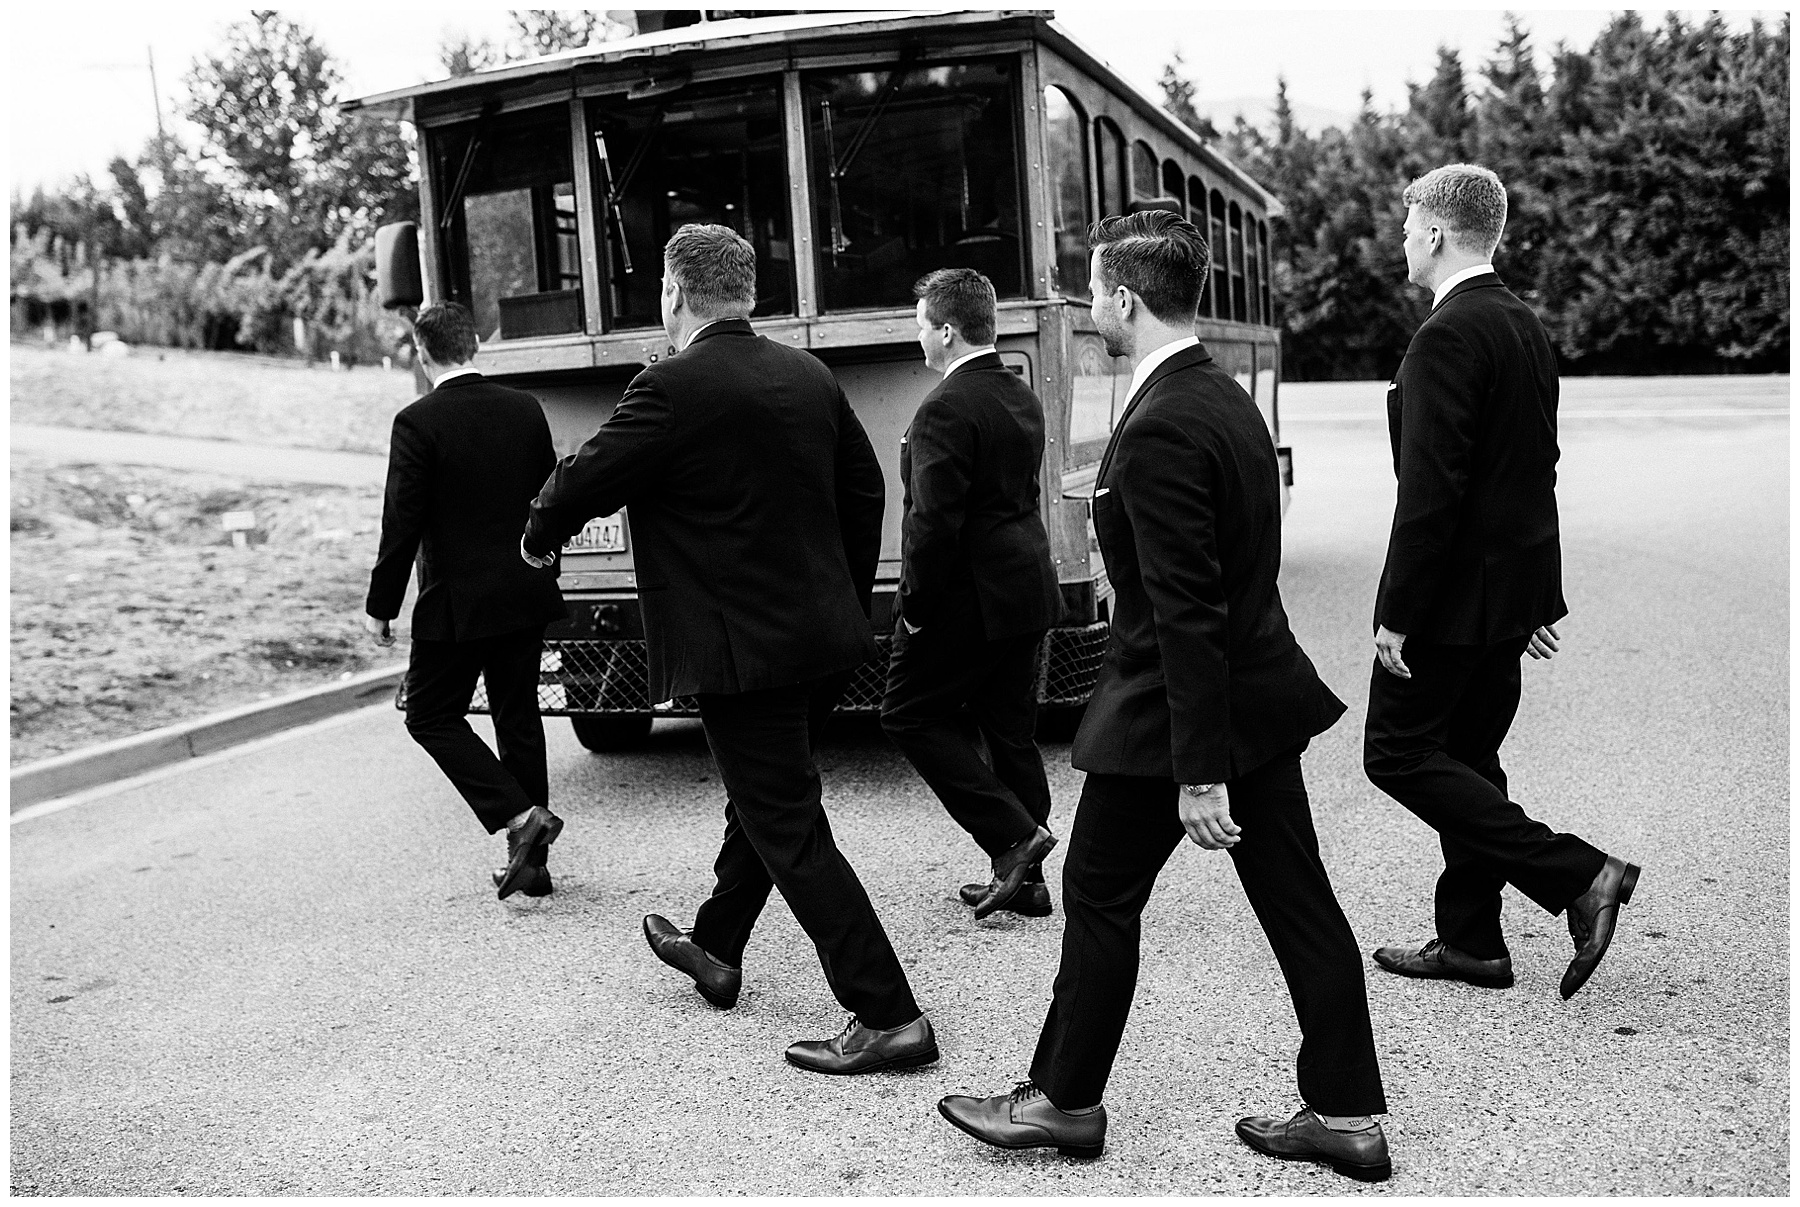 groomsmen get on board the trolley.